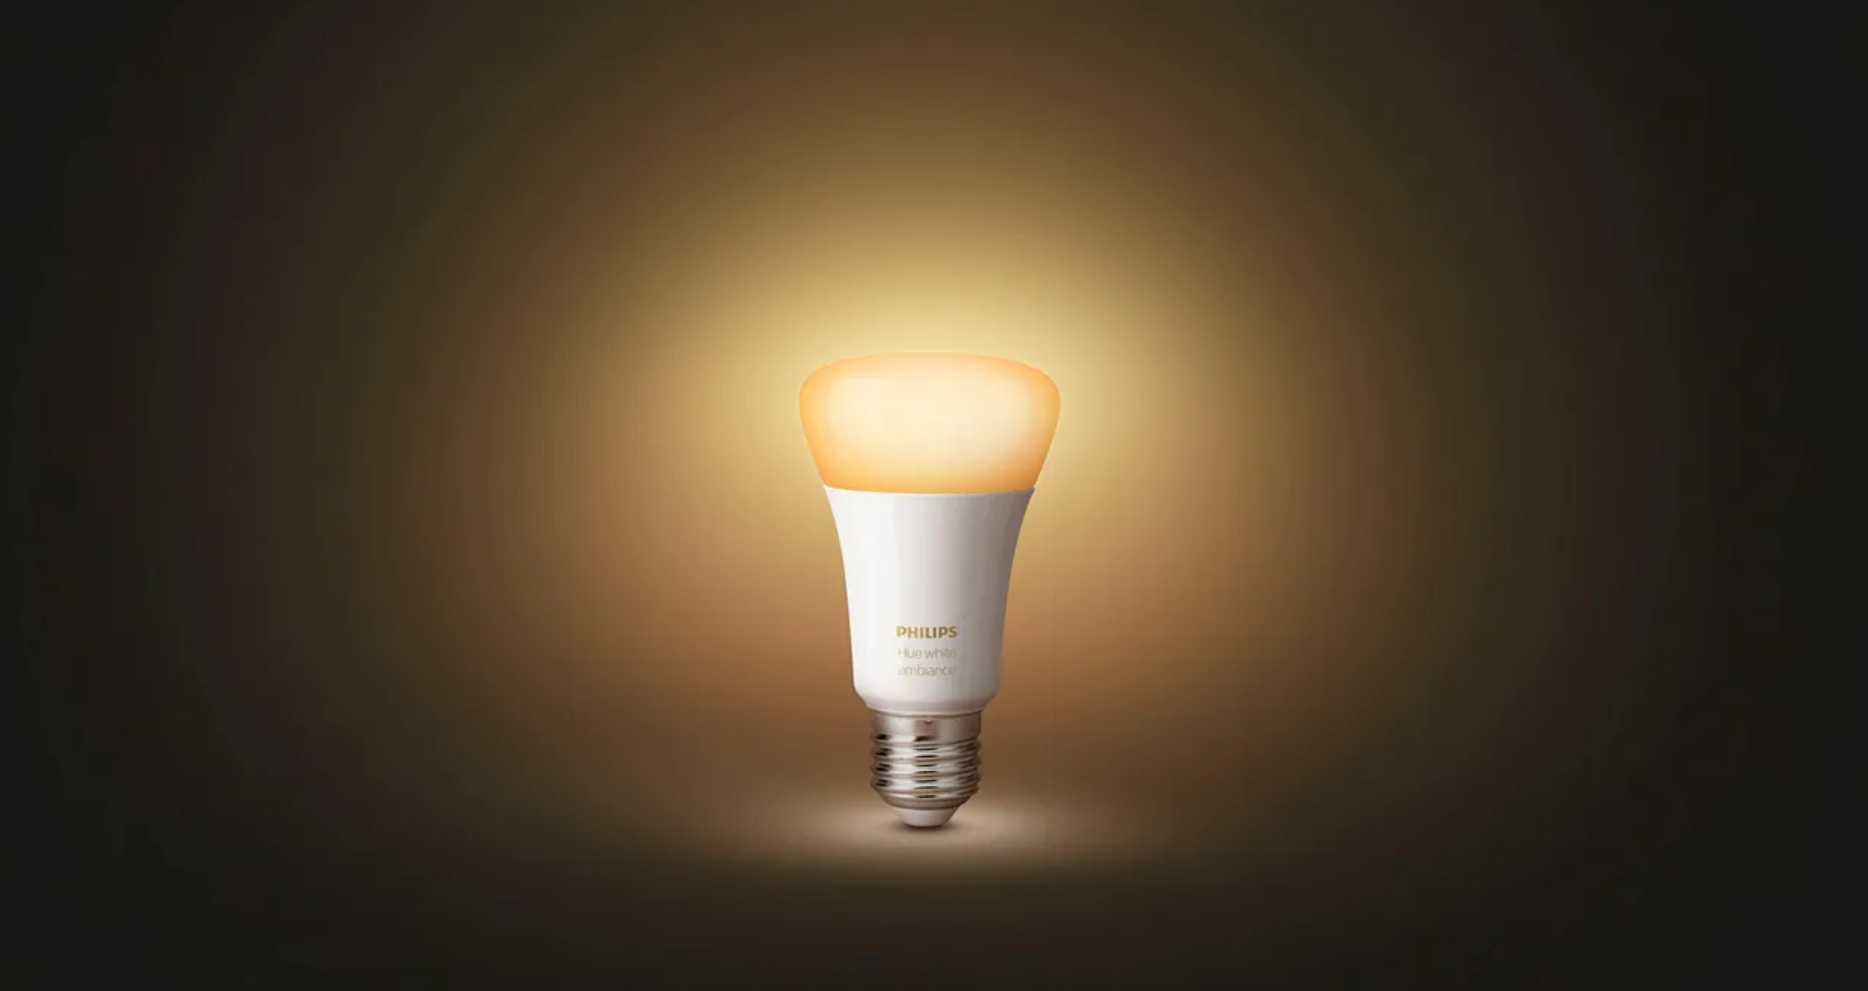 Philips Hue lampadina LED bianca in offerta limitata a 5 Euro su